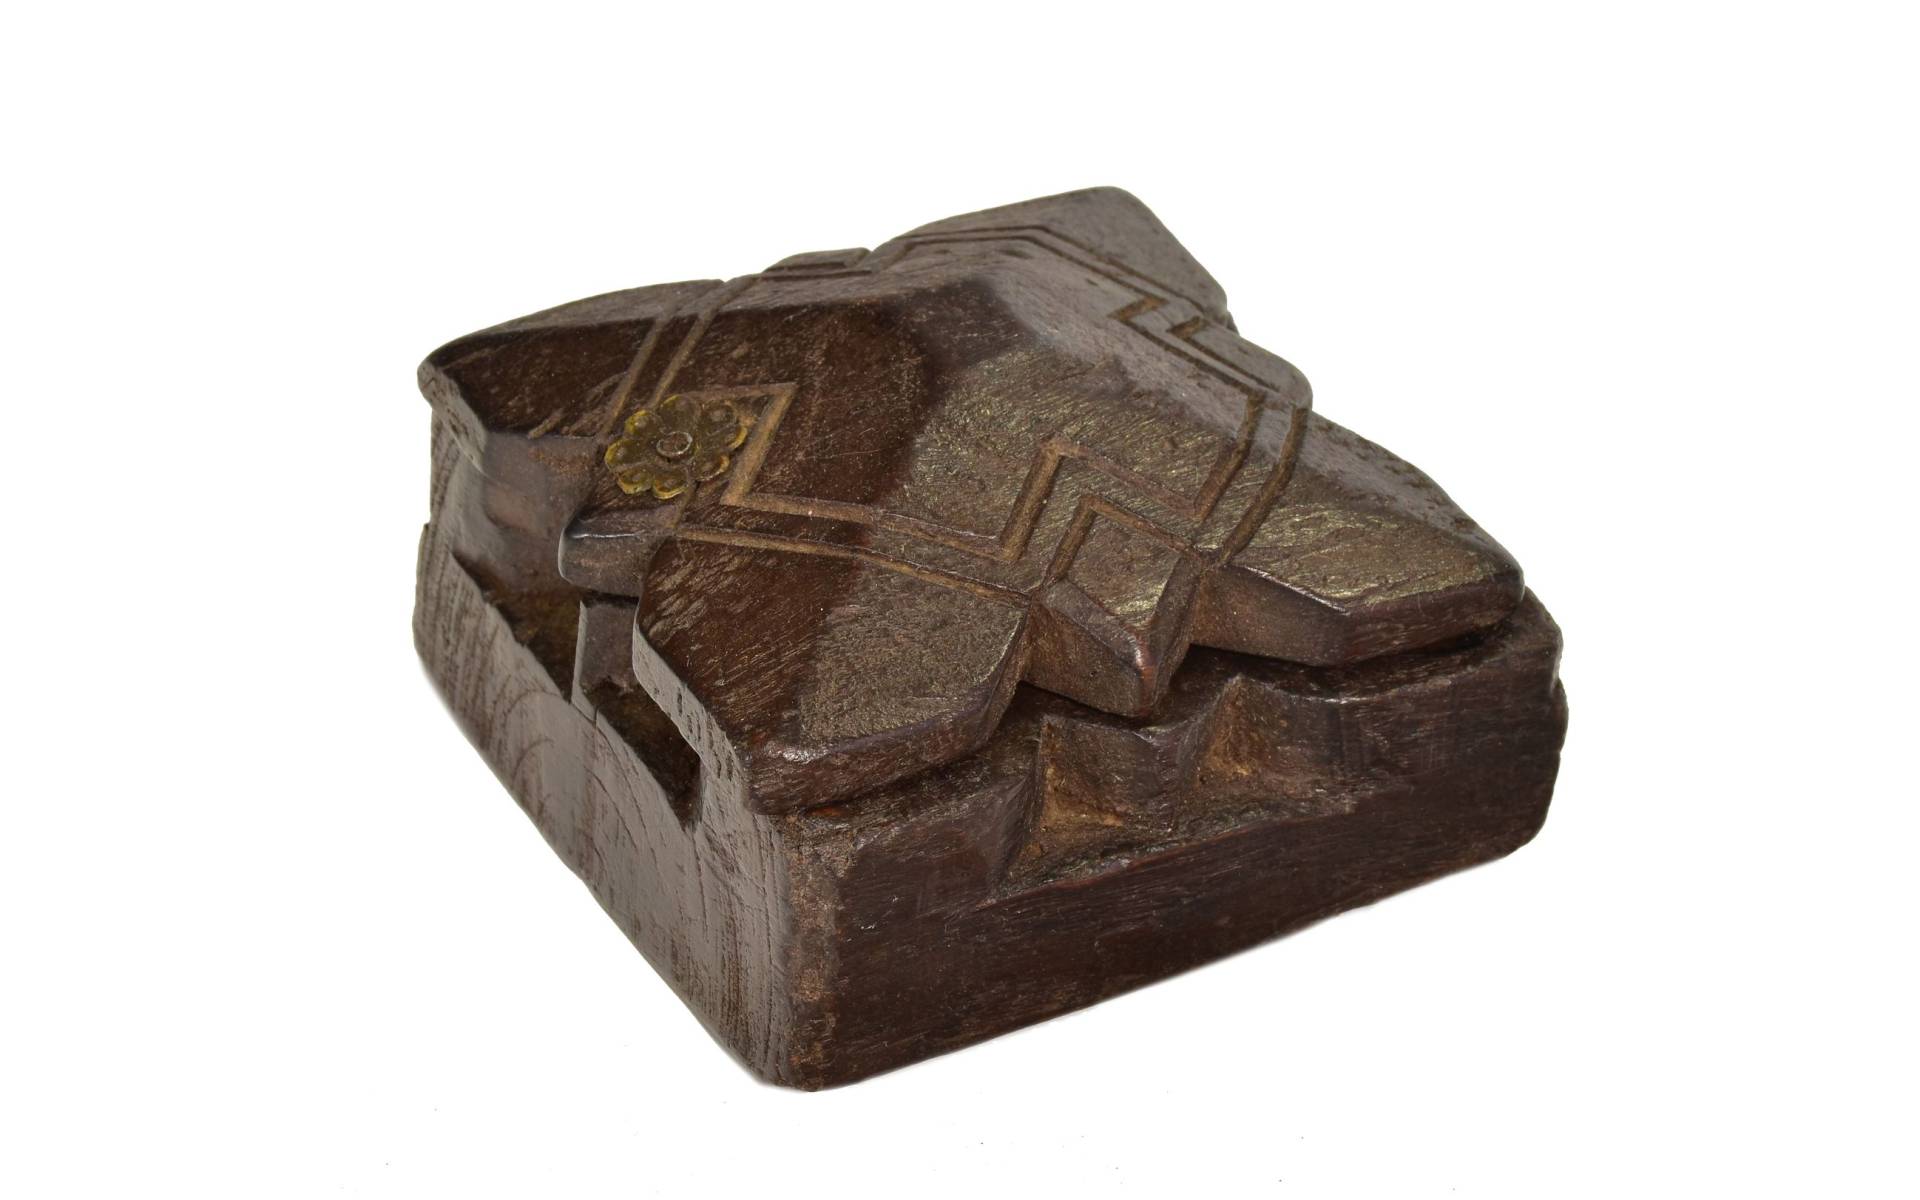 Krabička na tikov, antik, teakové drevo, ručne vyrezaná, 11x12x6cm